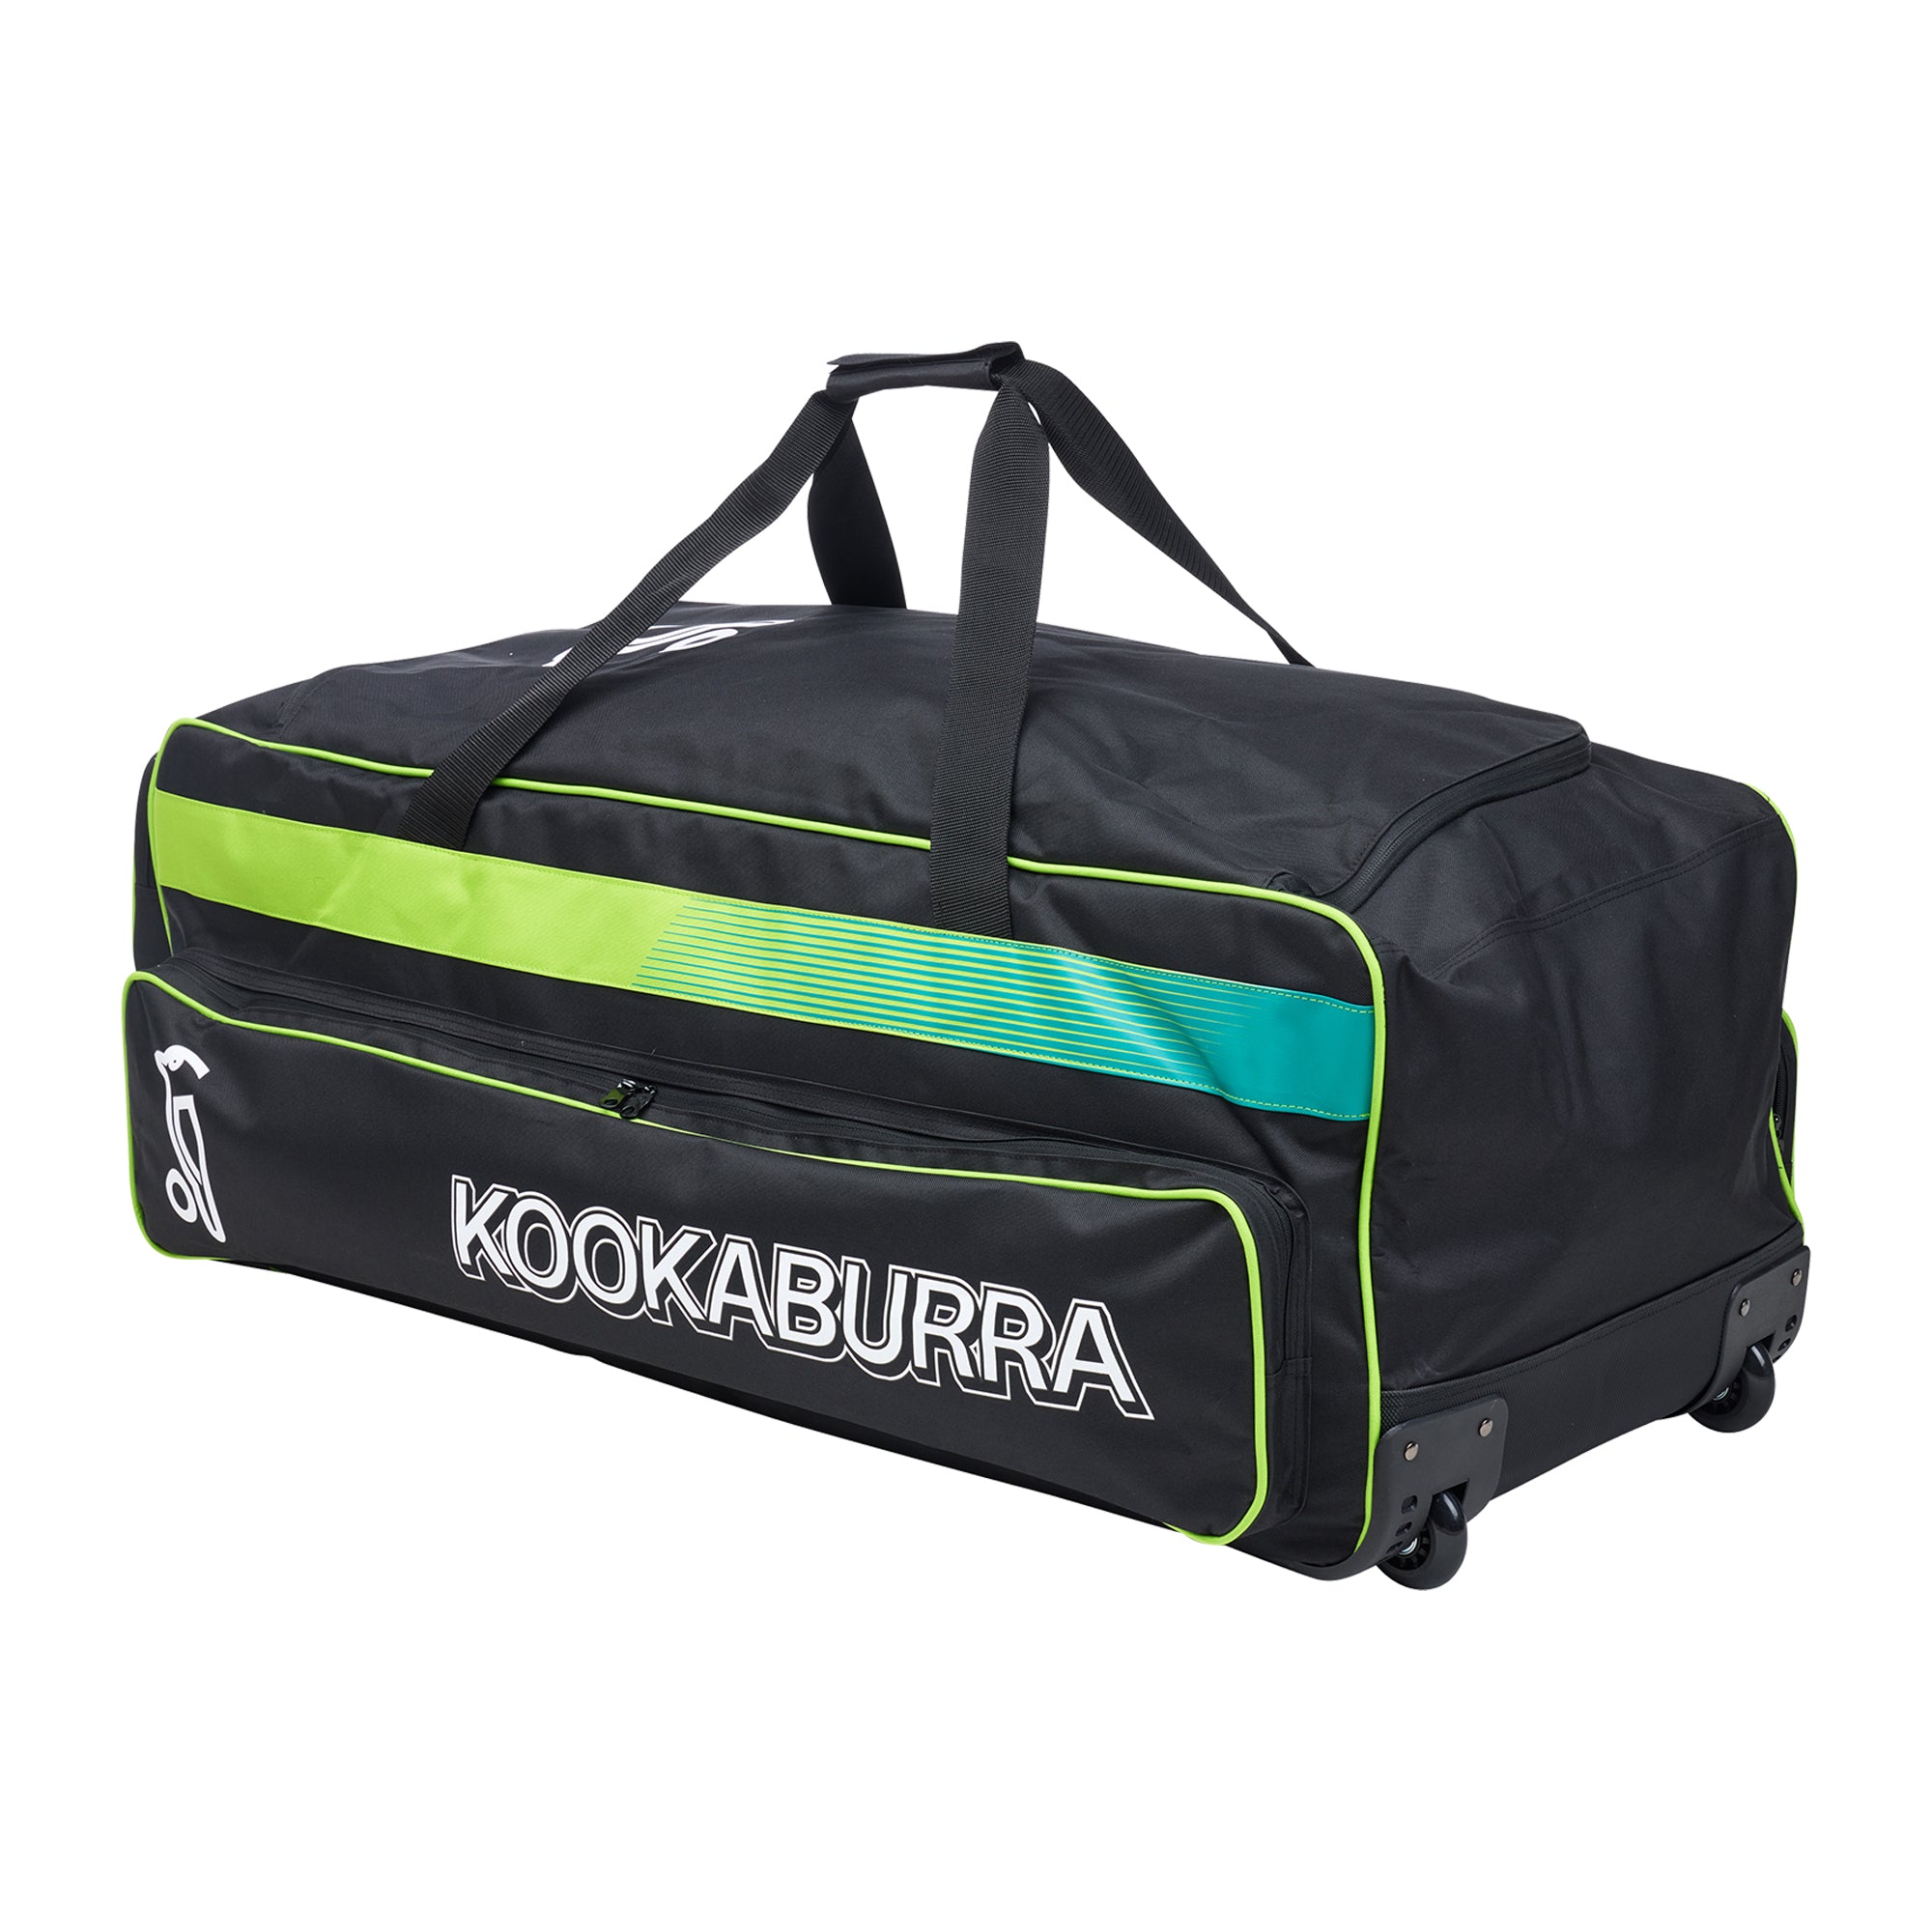 Kookaburra Pro 1.0 Wheel Cricket Kit Bag Black/Lime